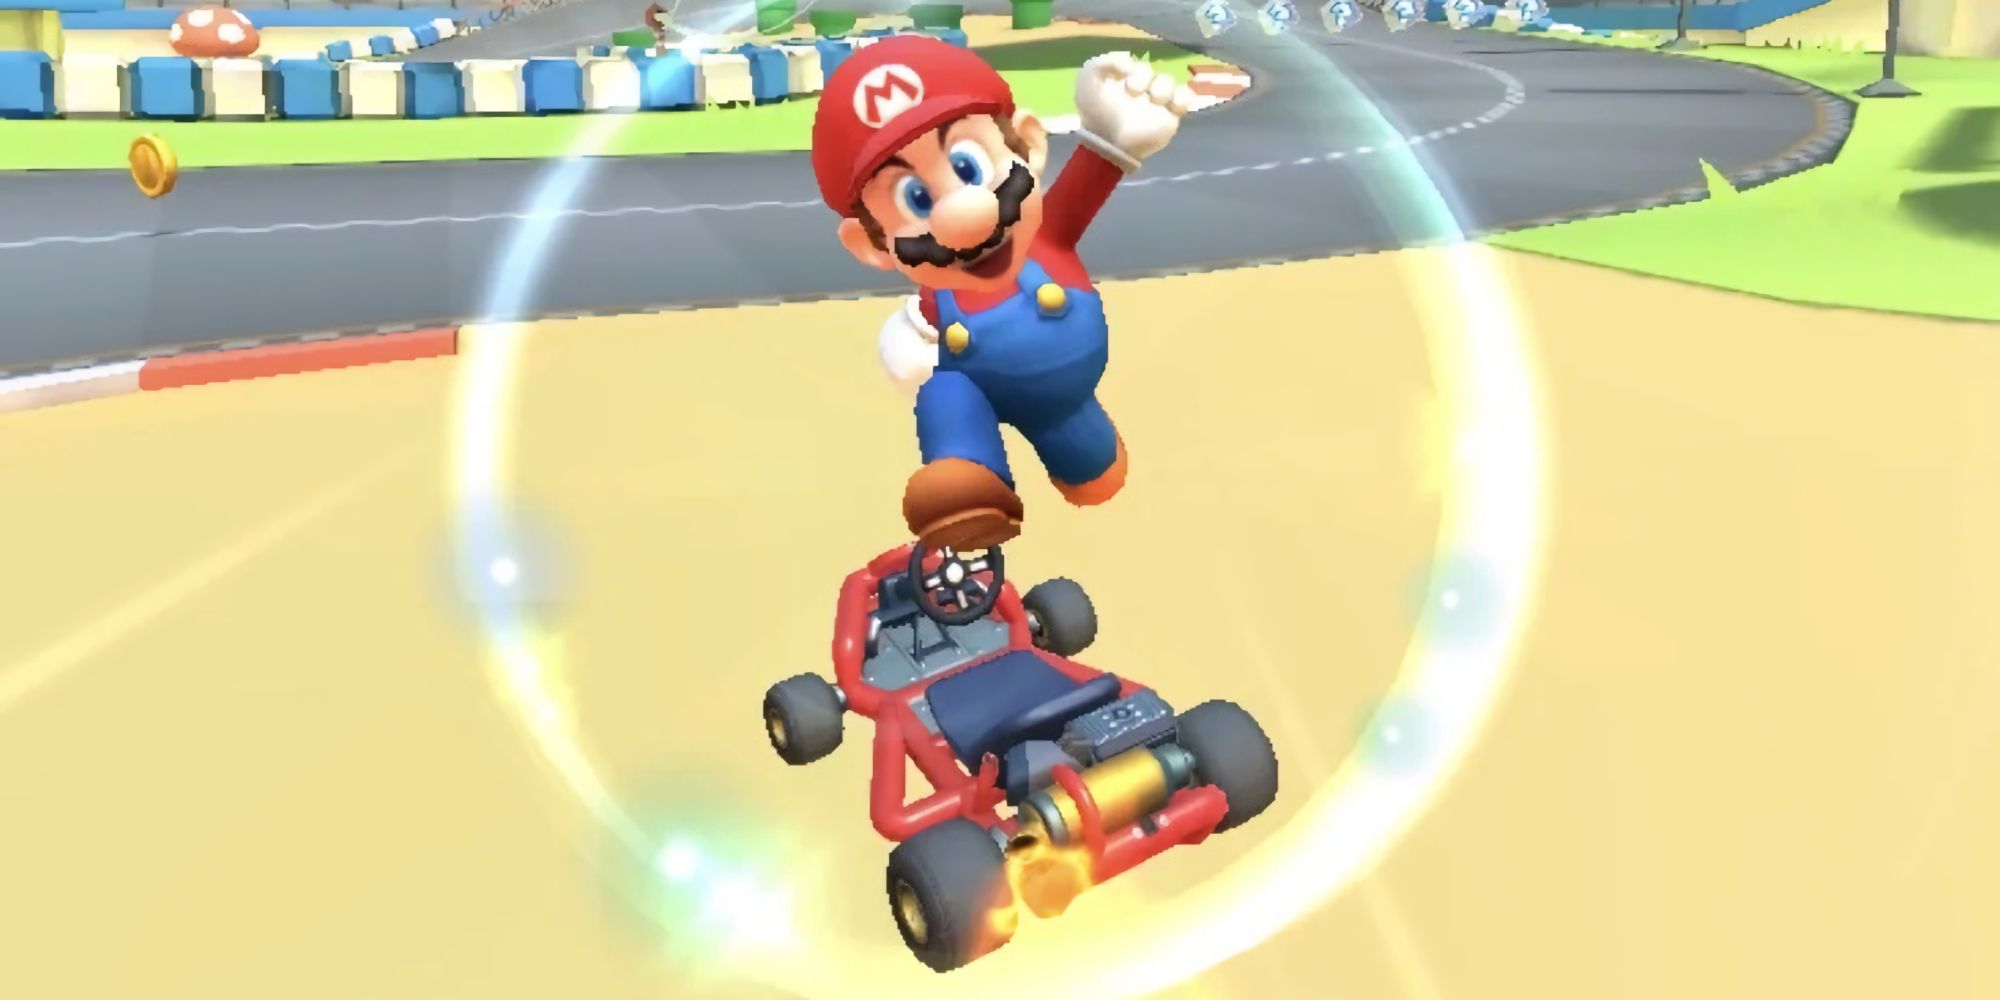 Mario Kart Tour Mario performs a trick on the frog arena